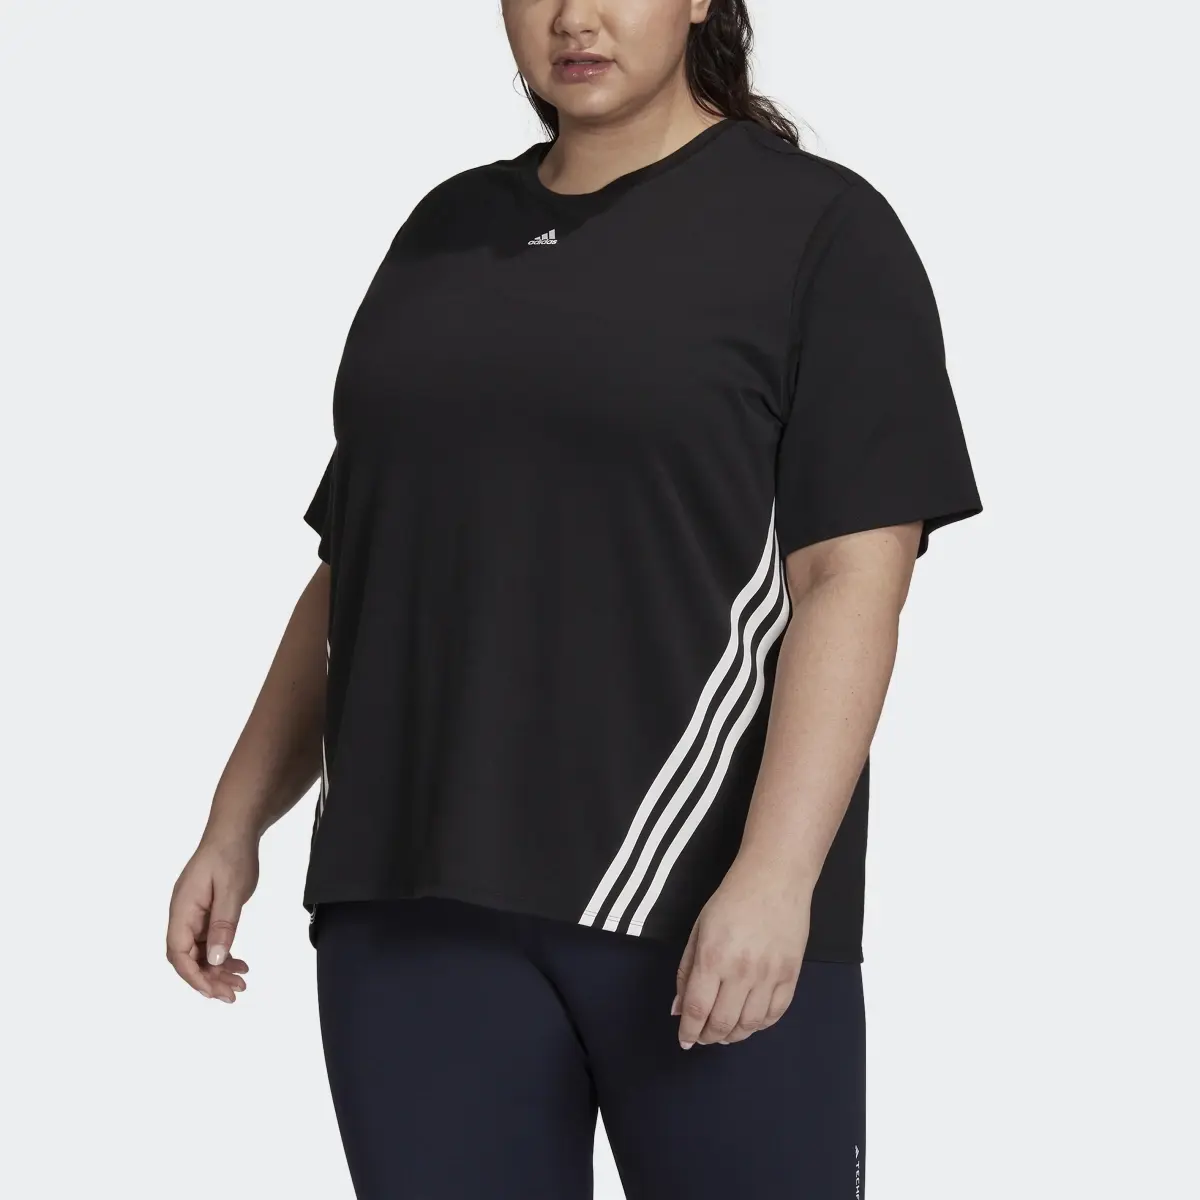 Adidas Train Icons 3-Stripes T-Shirt (Plus Size). 1